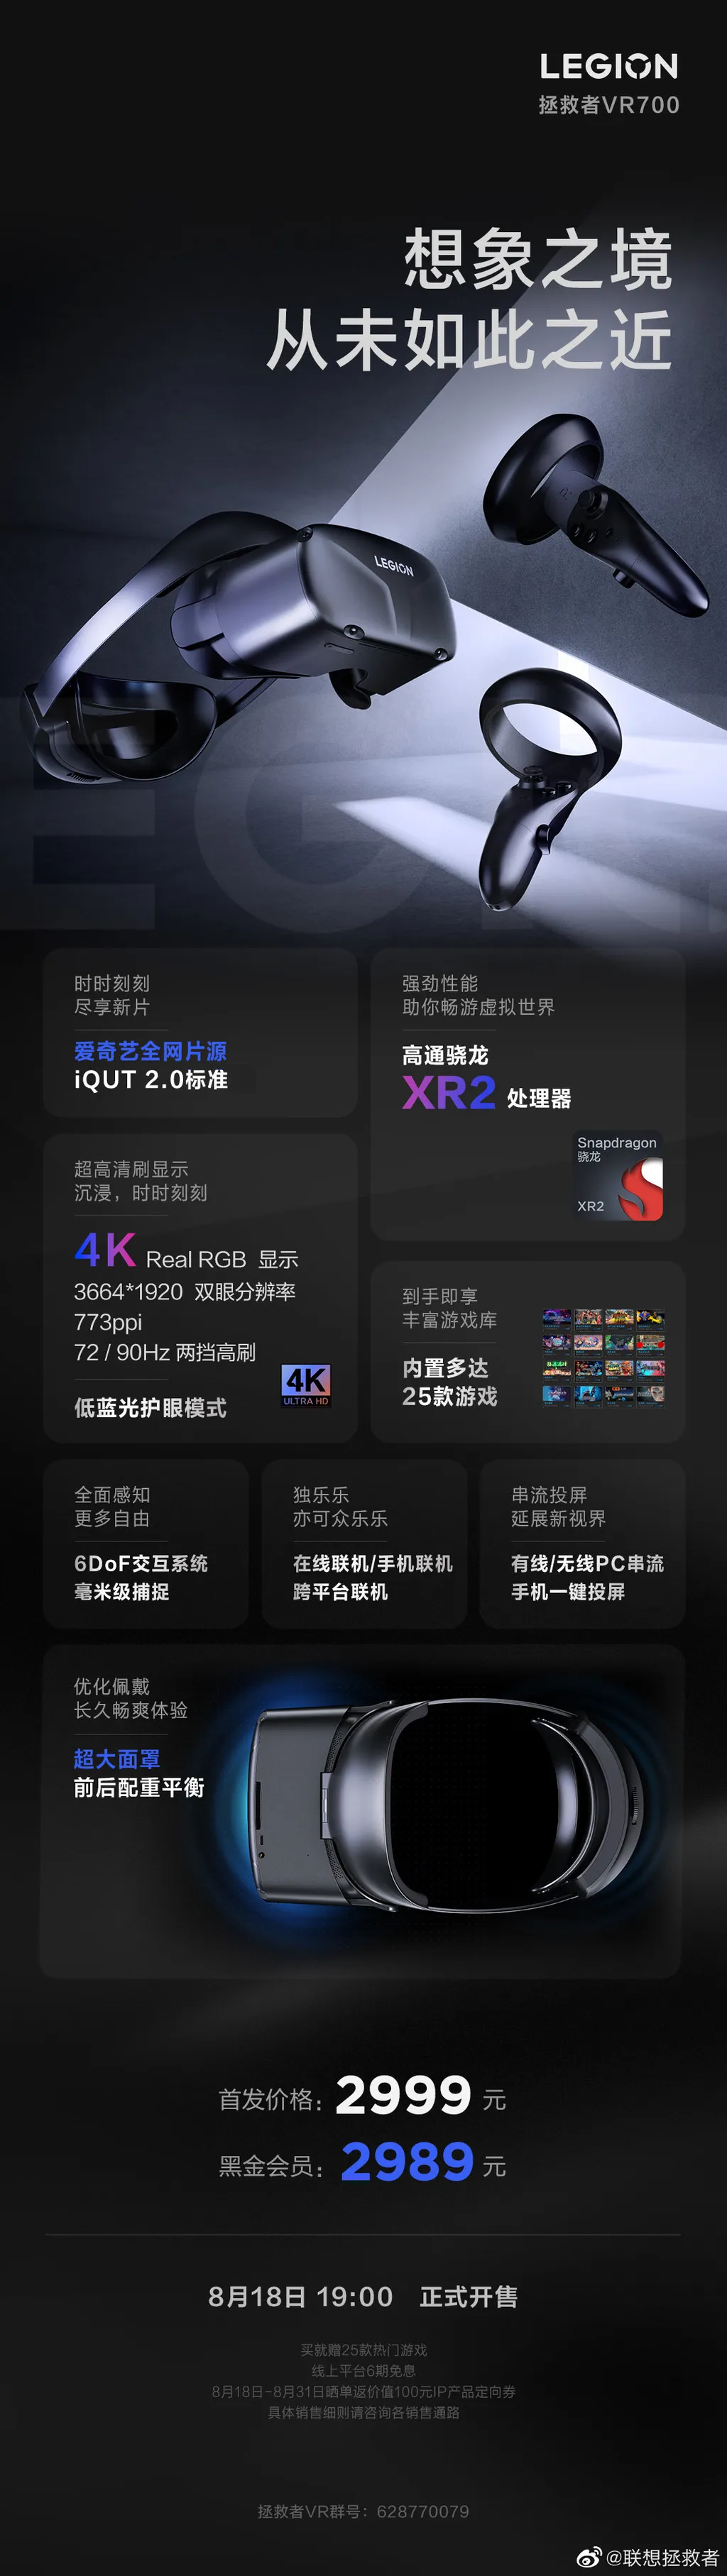 Lenovo Legion VR700 tem tela de até 90 Hz (Imagem: Weibo/Lenovo) 